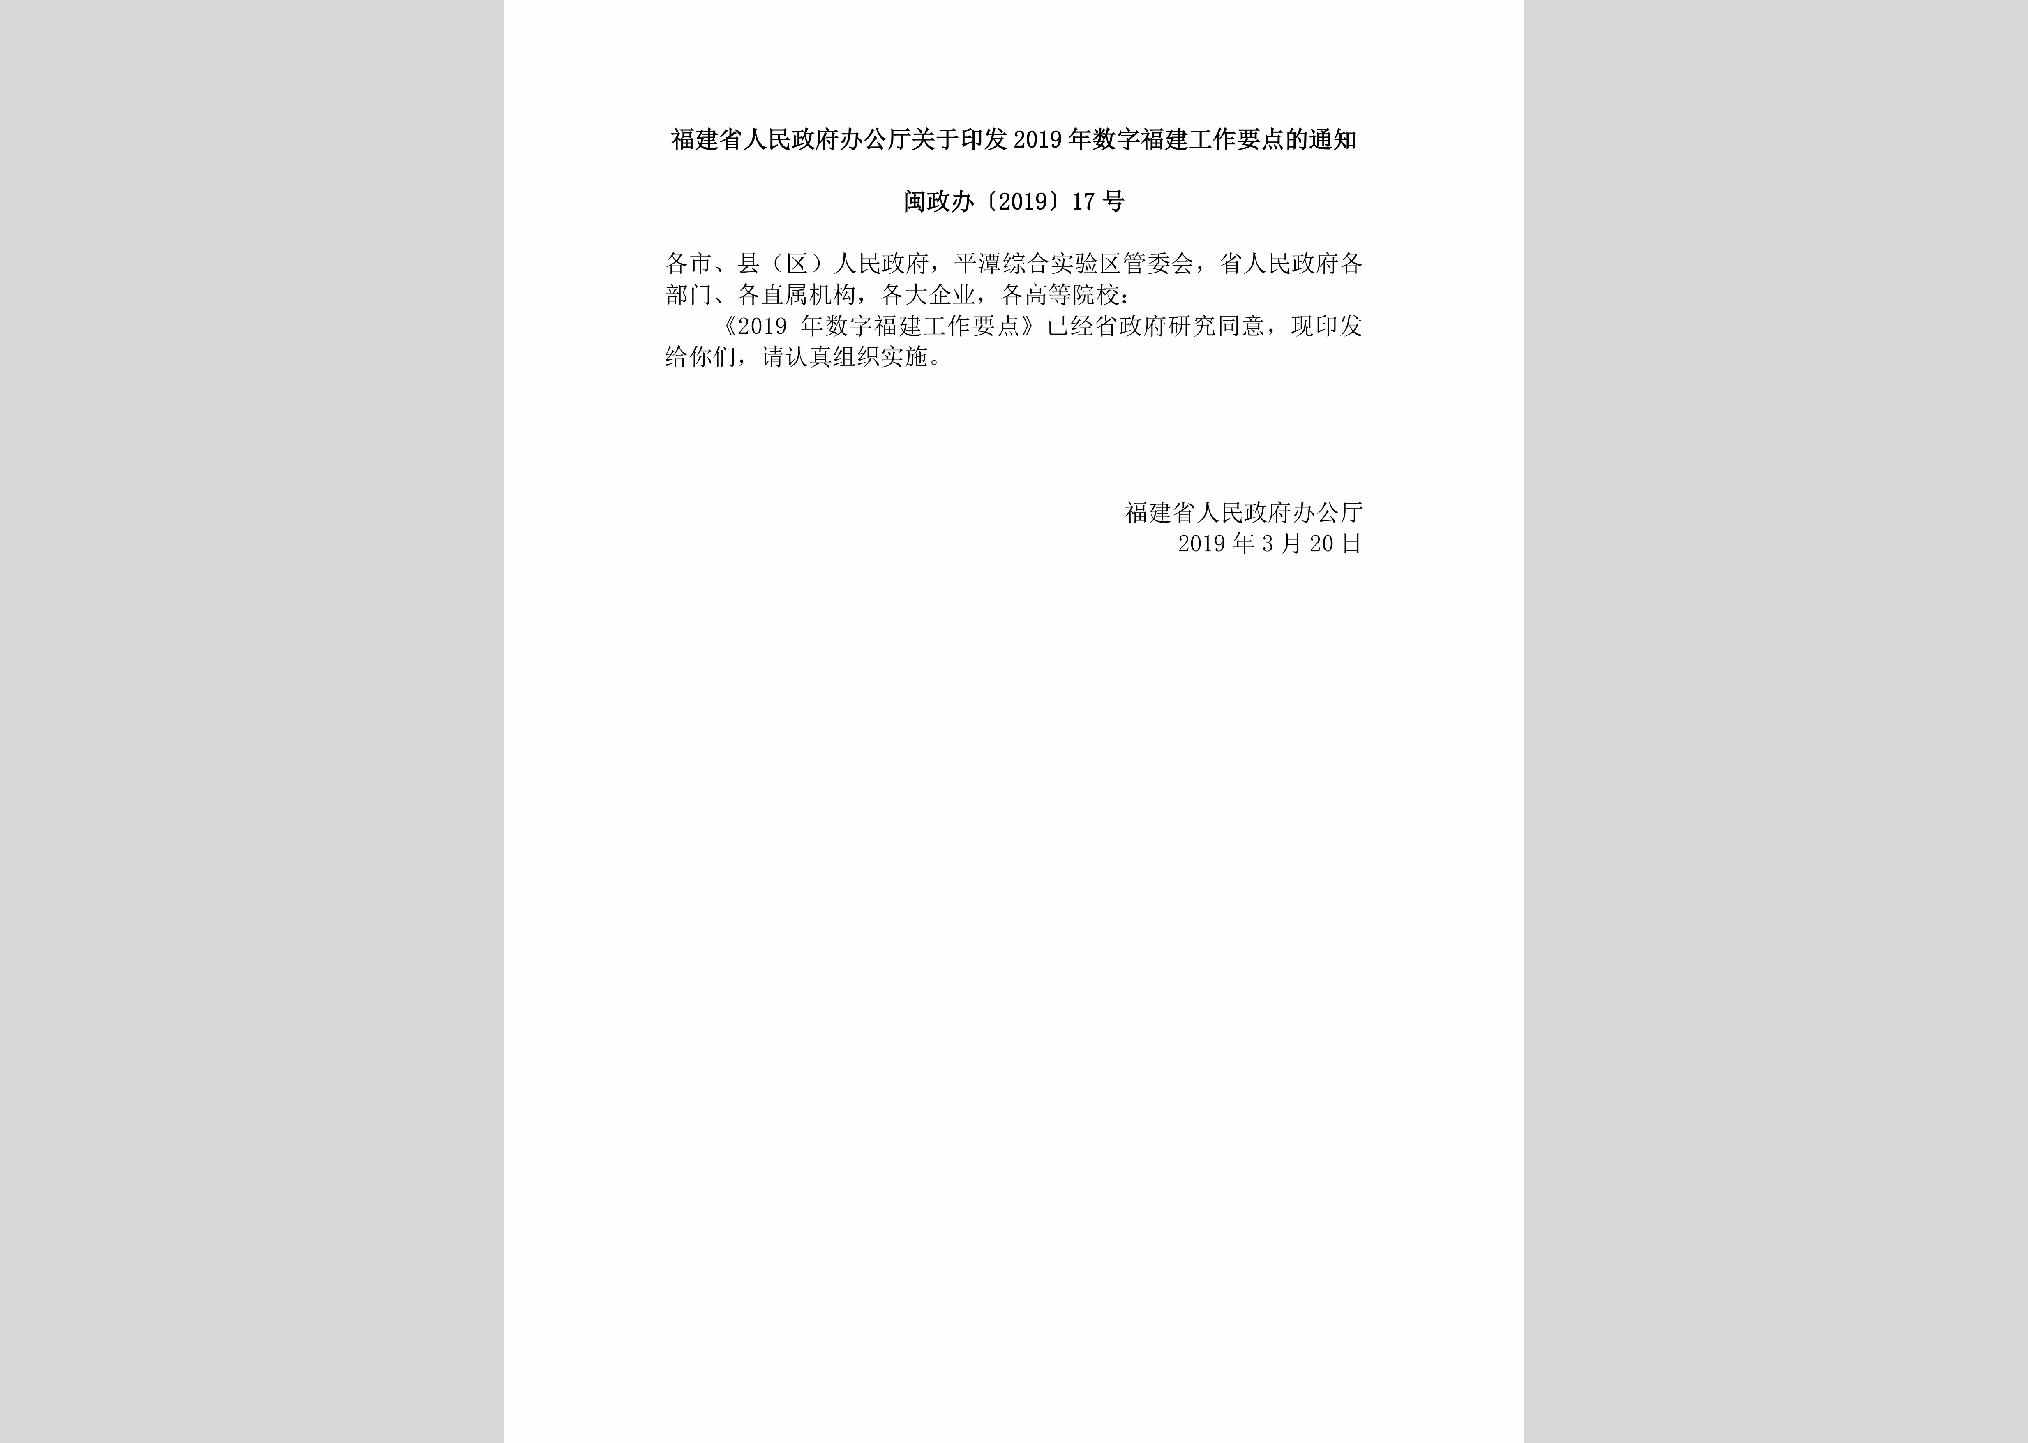 闽政办[2019]17号：福建省人民政府办公厅关于印发2019年数字福建工作要点的通知